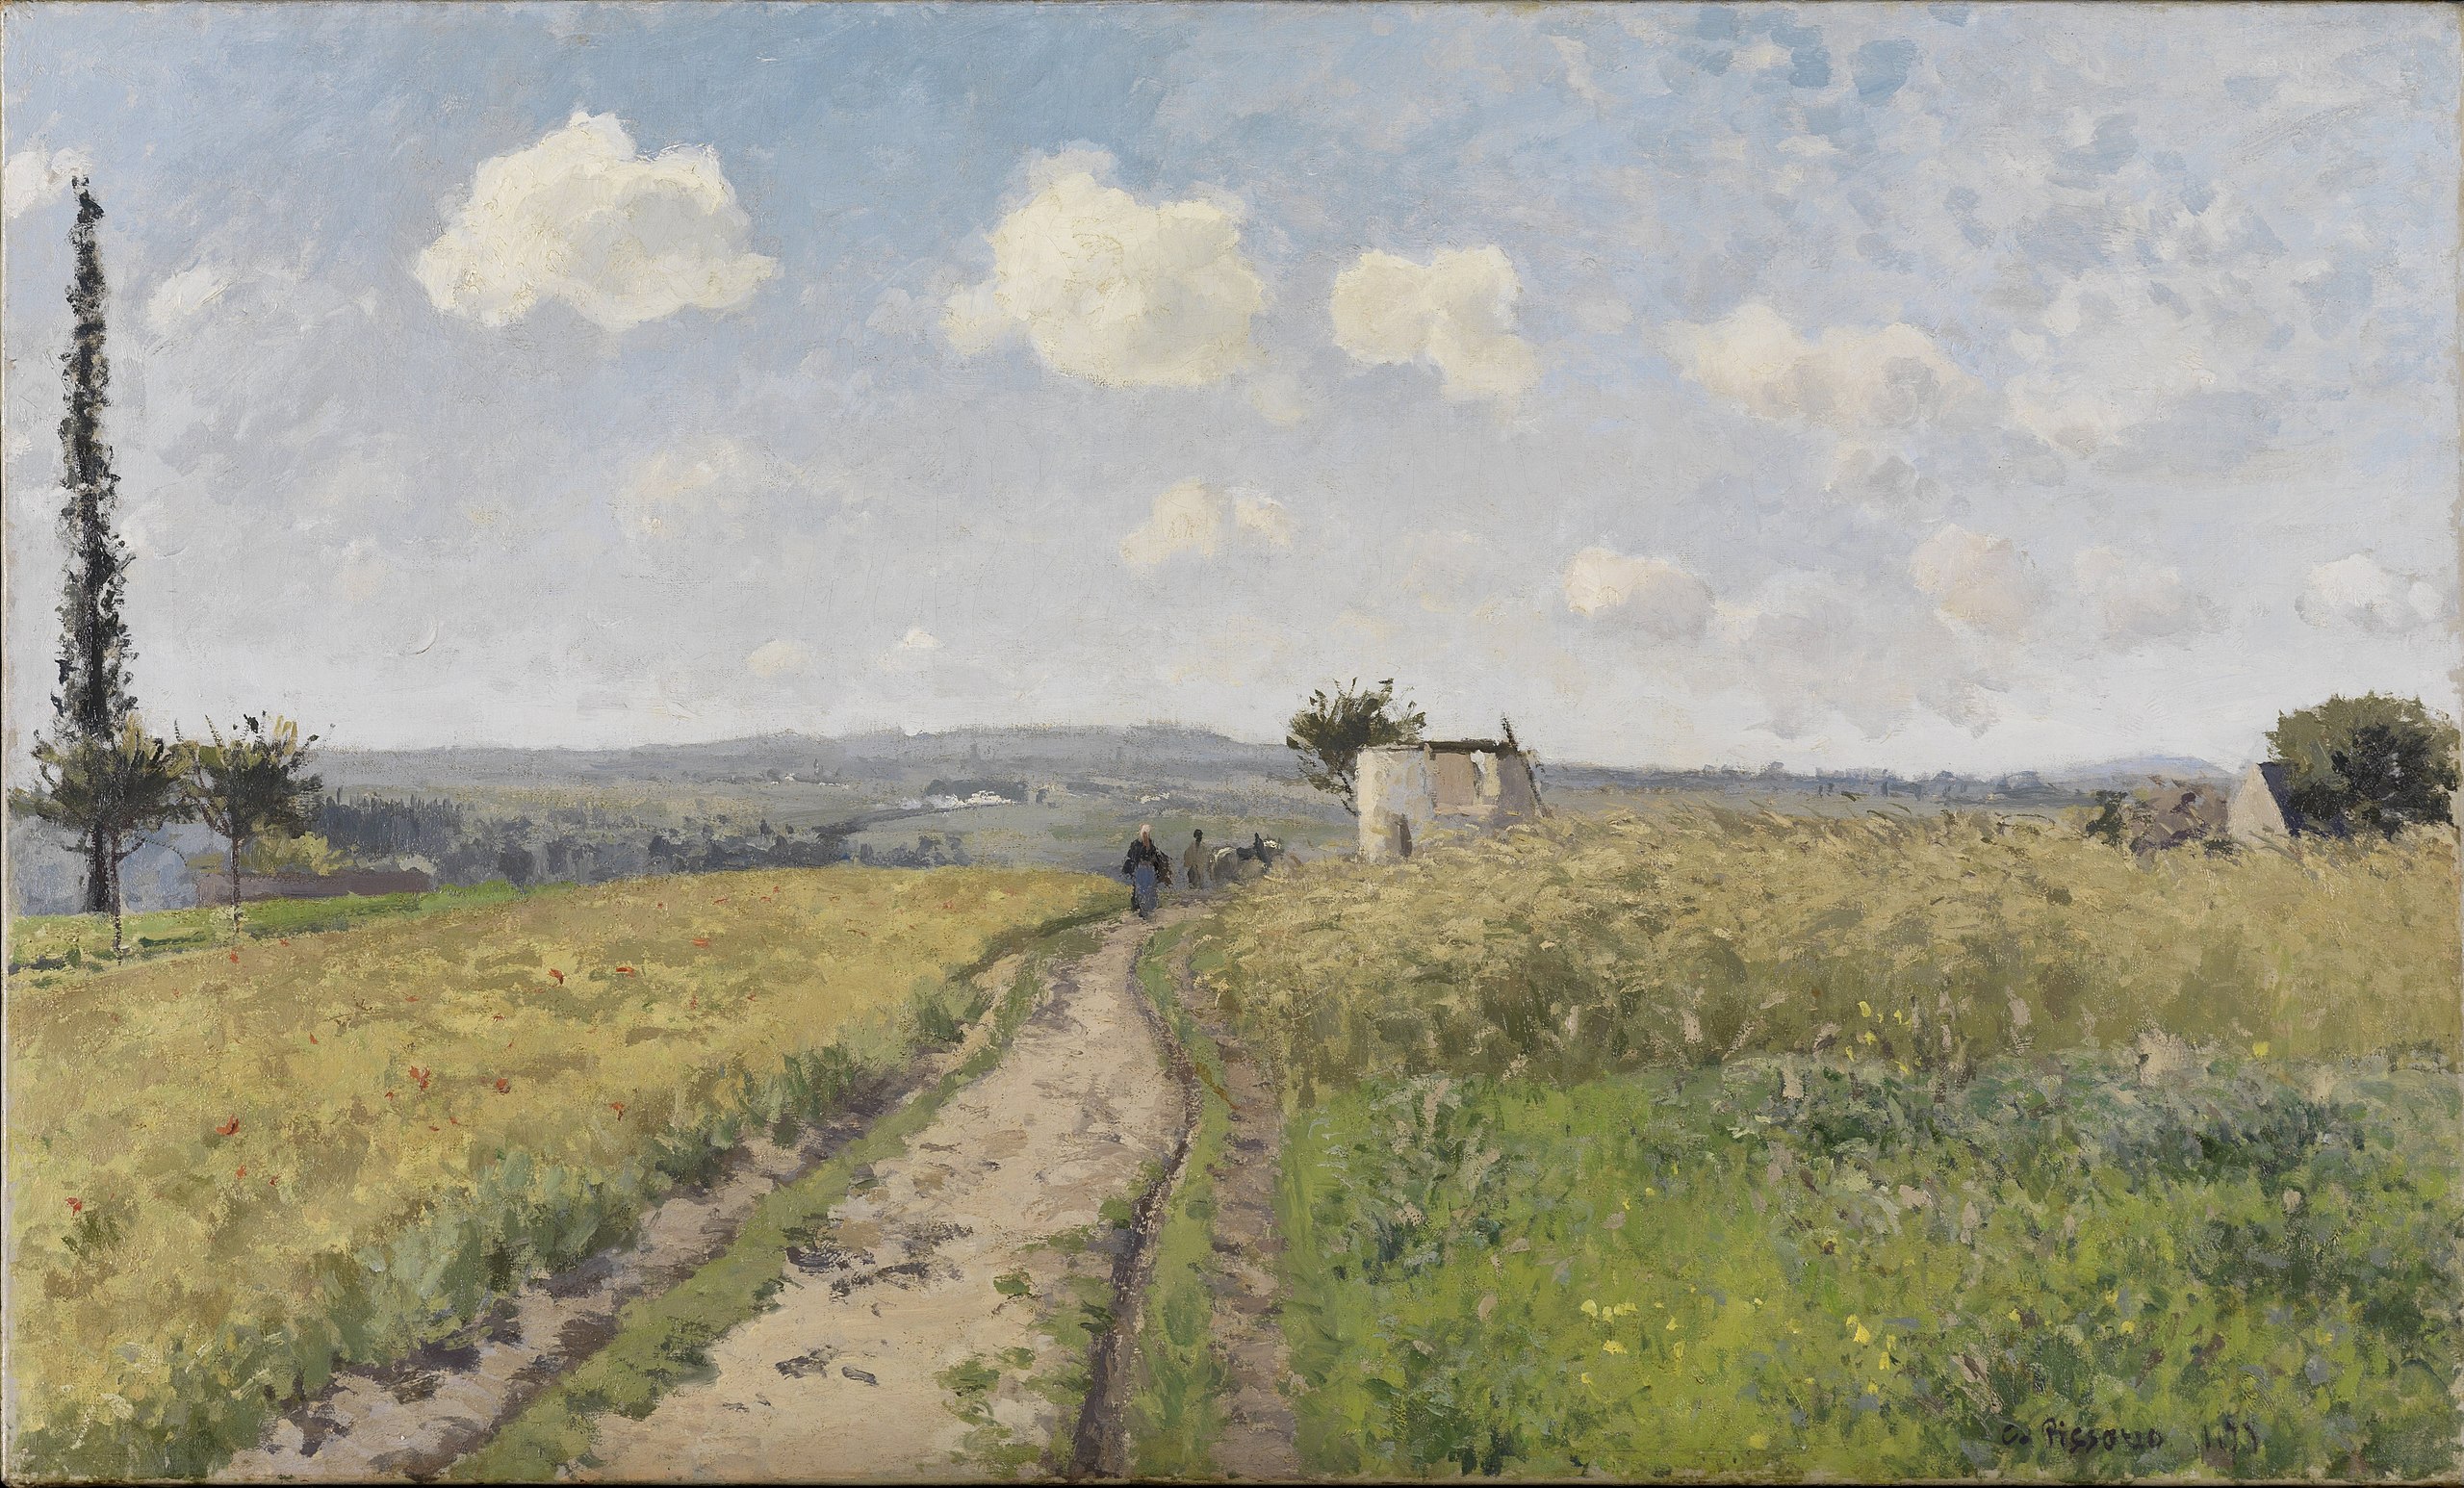 퐁투아즈 인근의 6월 아침 (June Morning near Pontoise) by Camille Pissarro - 1873 - 78 cm x 115 cm 